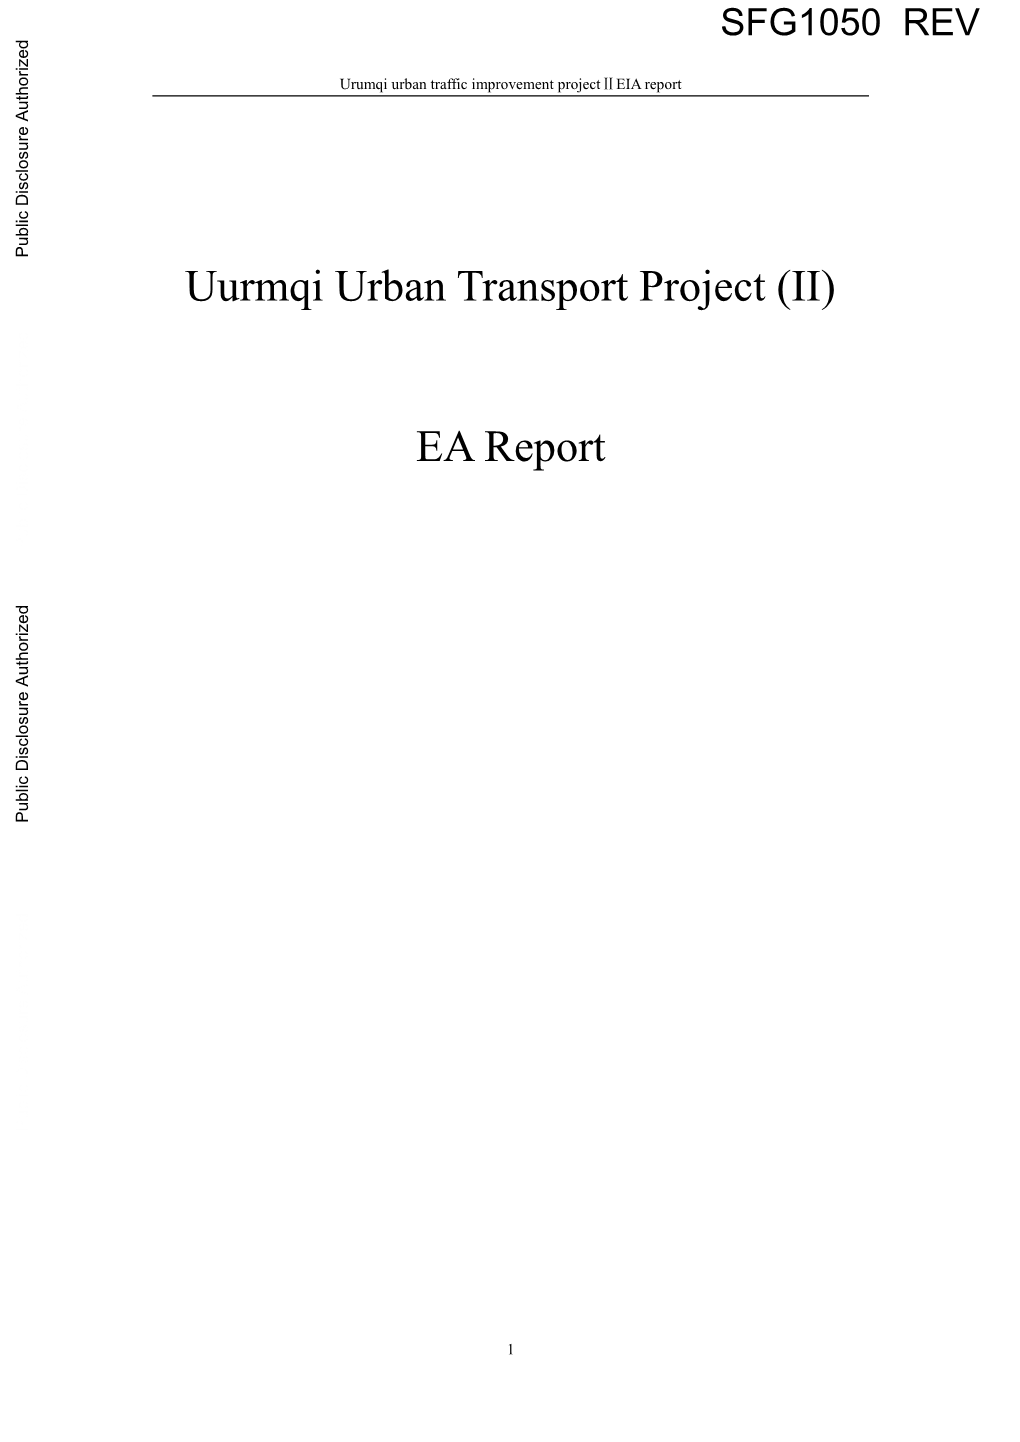 Uurmqi Urban Transport Project (II) EA Report